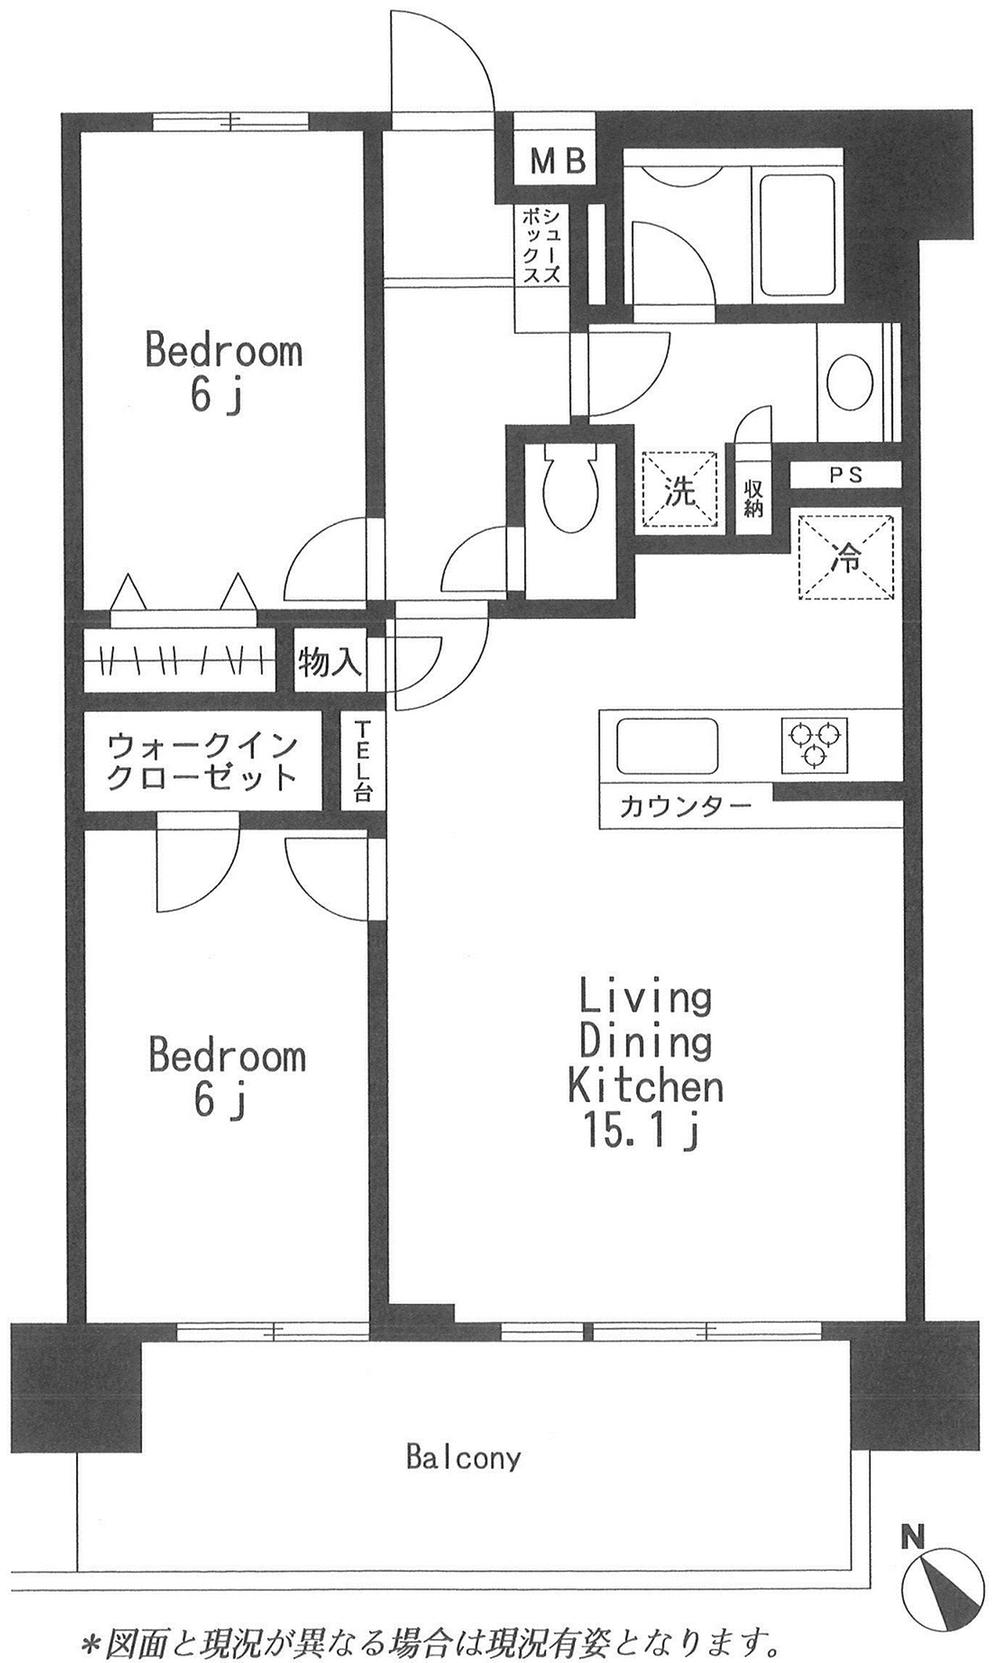 Floor plan. 1LDK + S (storeroom), Price 18,800,000 yen, Occupied area 61.97 sq m